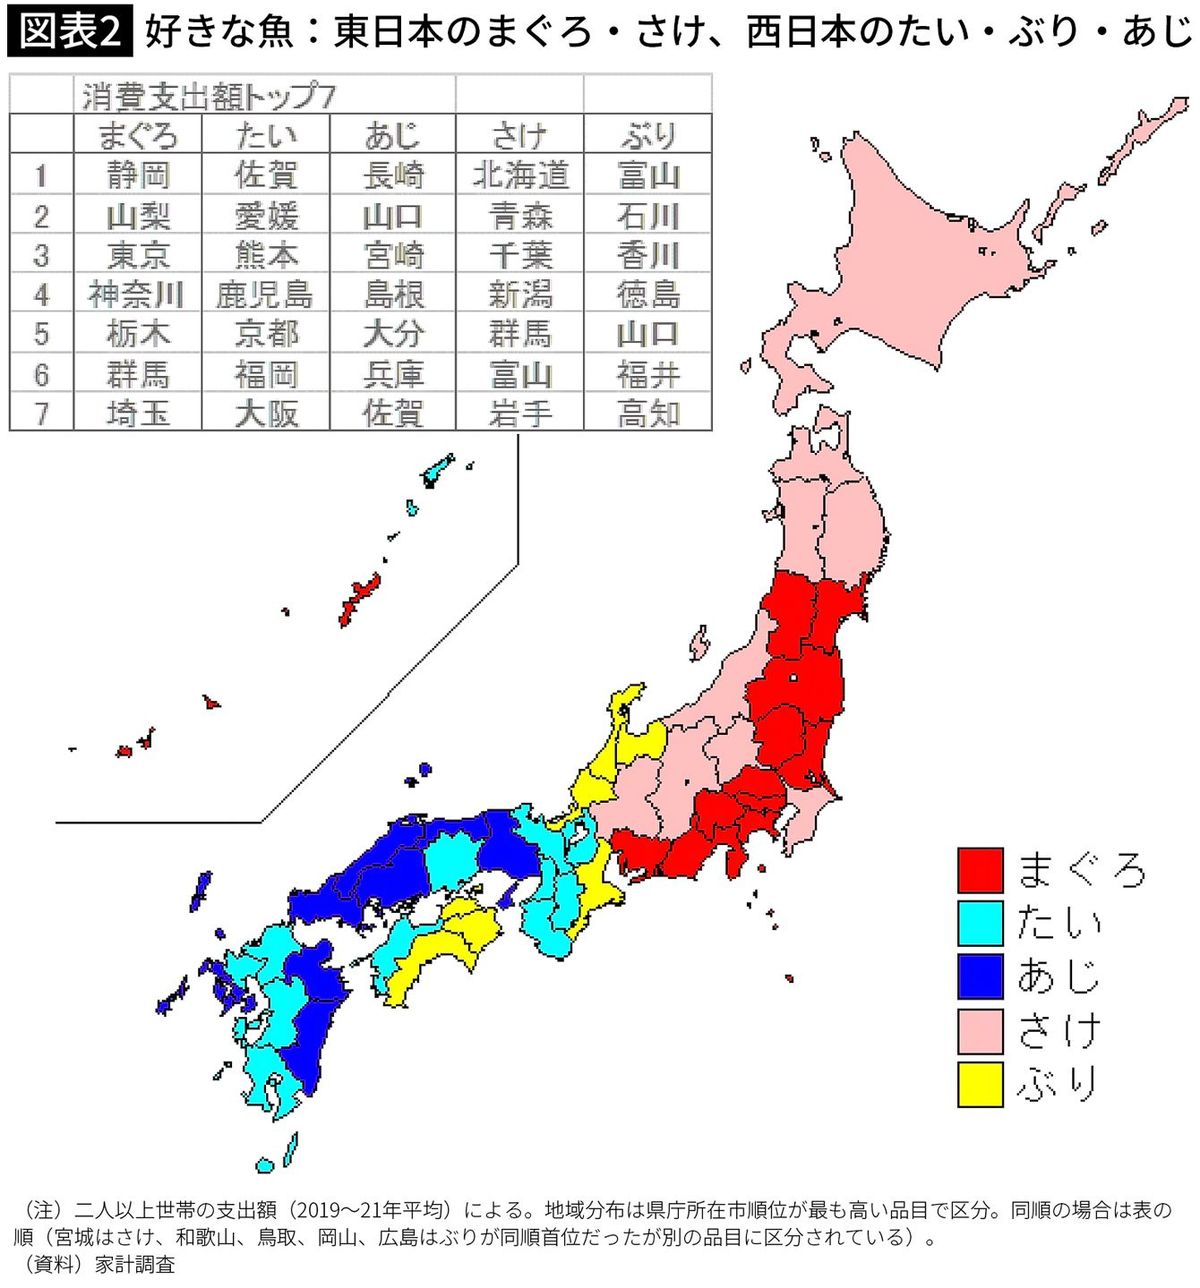 【図表2】好きな魚：東日本のまぐろ・さけ、西日本のたい・ぶり・あじ